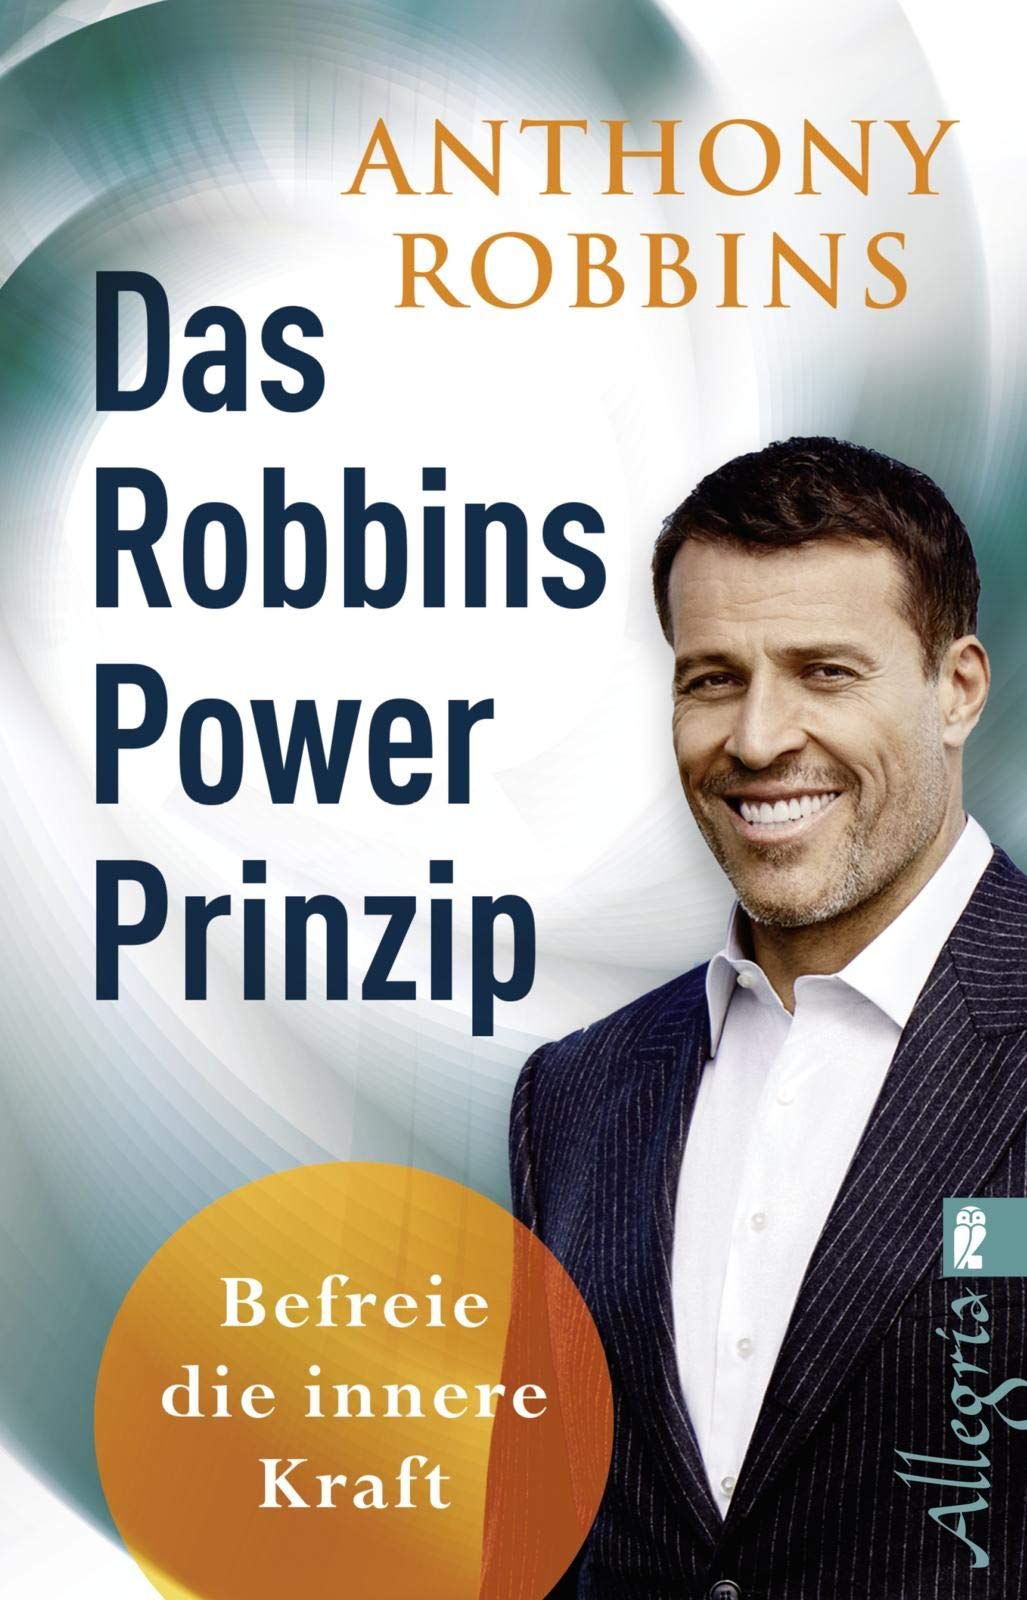 Die Top Produkte - Wählen Sie die Robbins power prinzip Ihrer Träume